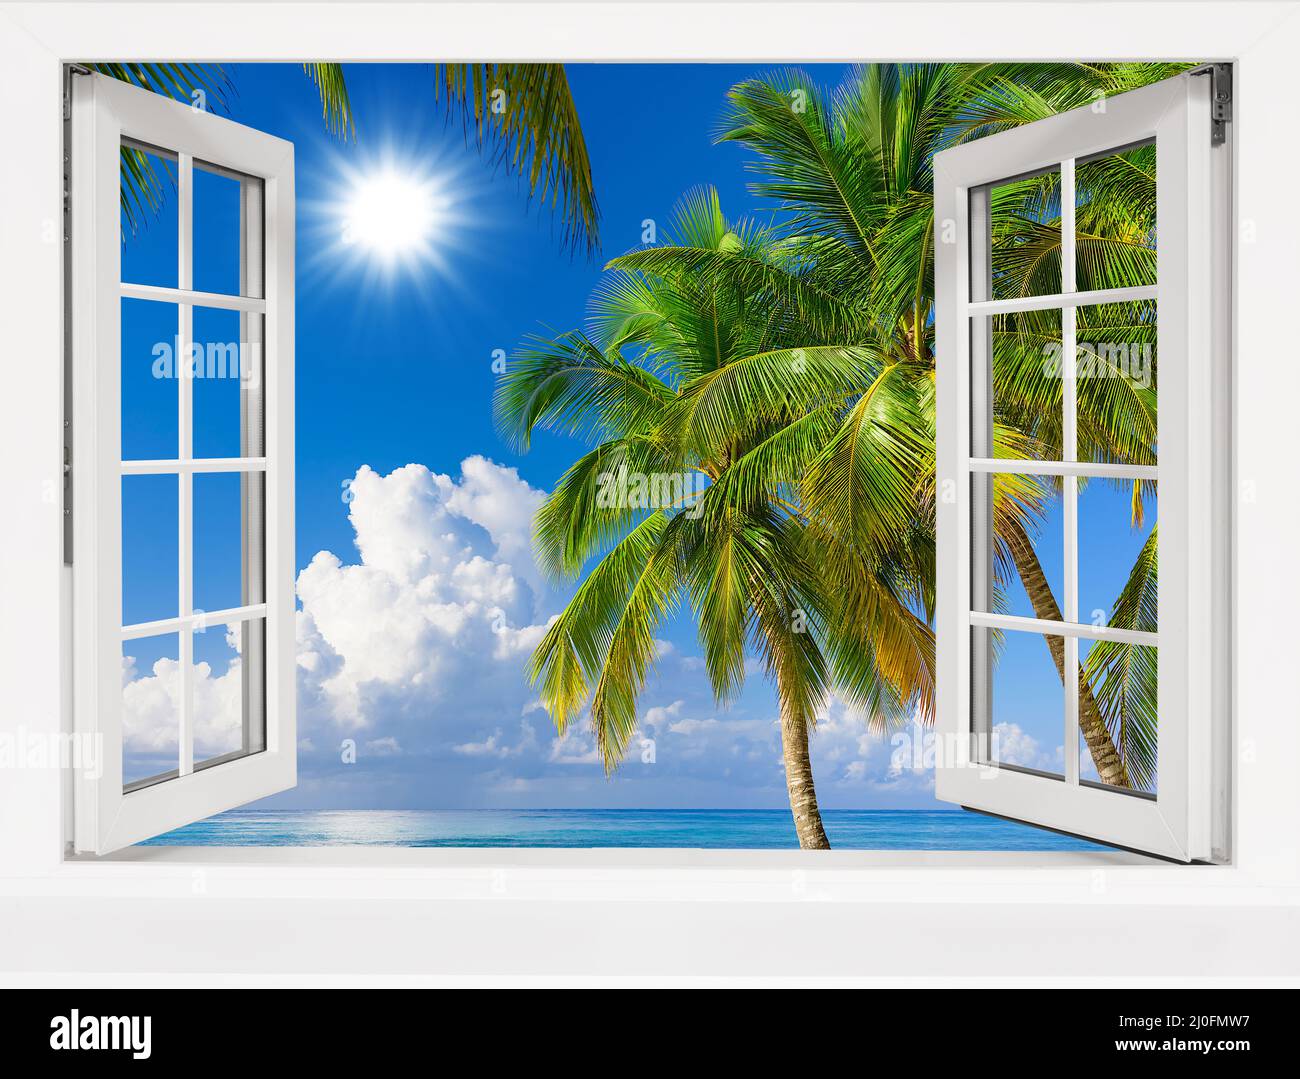 Vue d'une fenêtre ouverte sur un paysage tropical. Banque D'Images